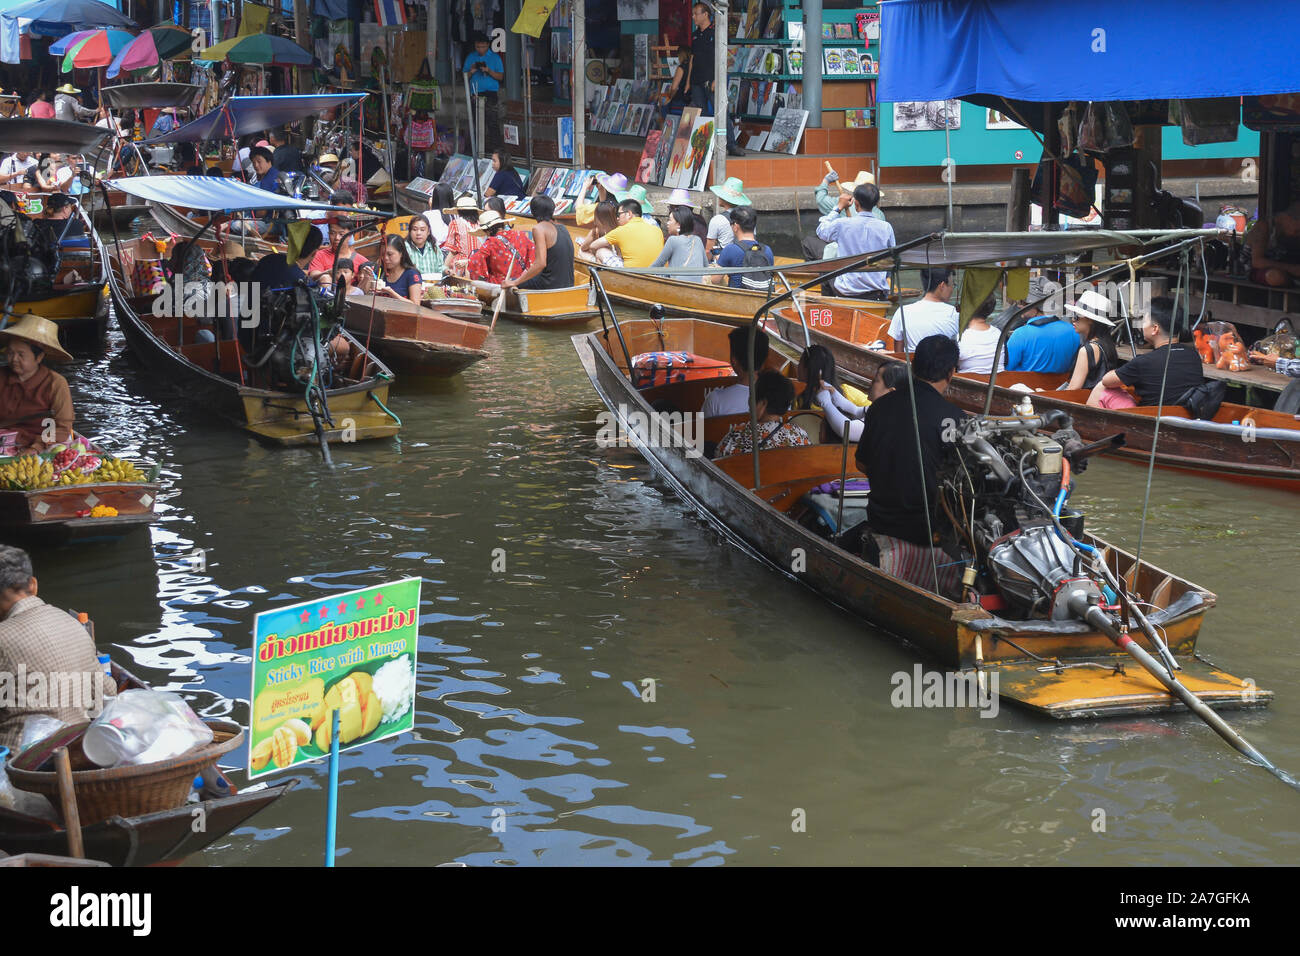 Bangkok, Thaïlande - novembre 09 : le marché flottant de Damnoen Saduak est un marché traditionnel, où ils vendent des marchandises et de la nourriture à partir des bateaux. Banque D'Images